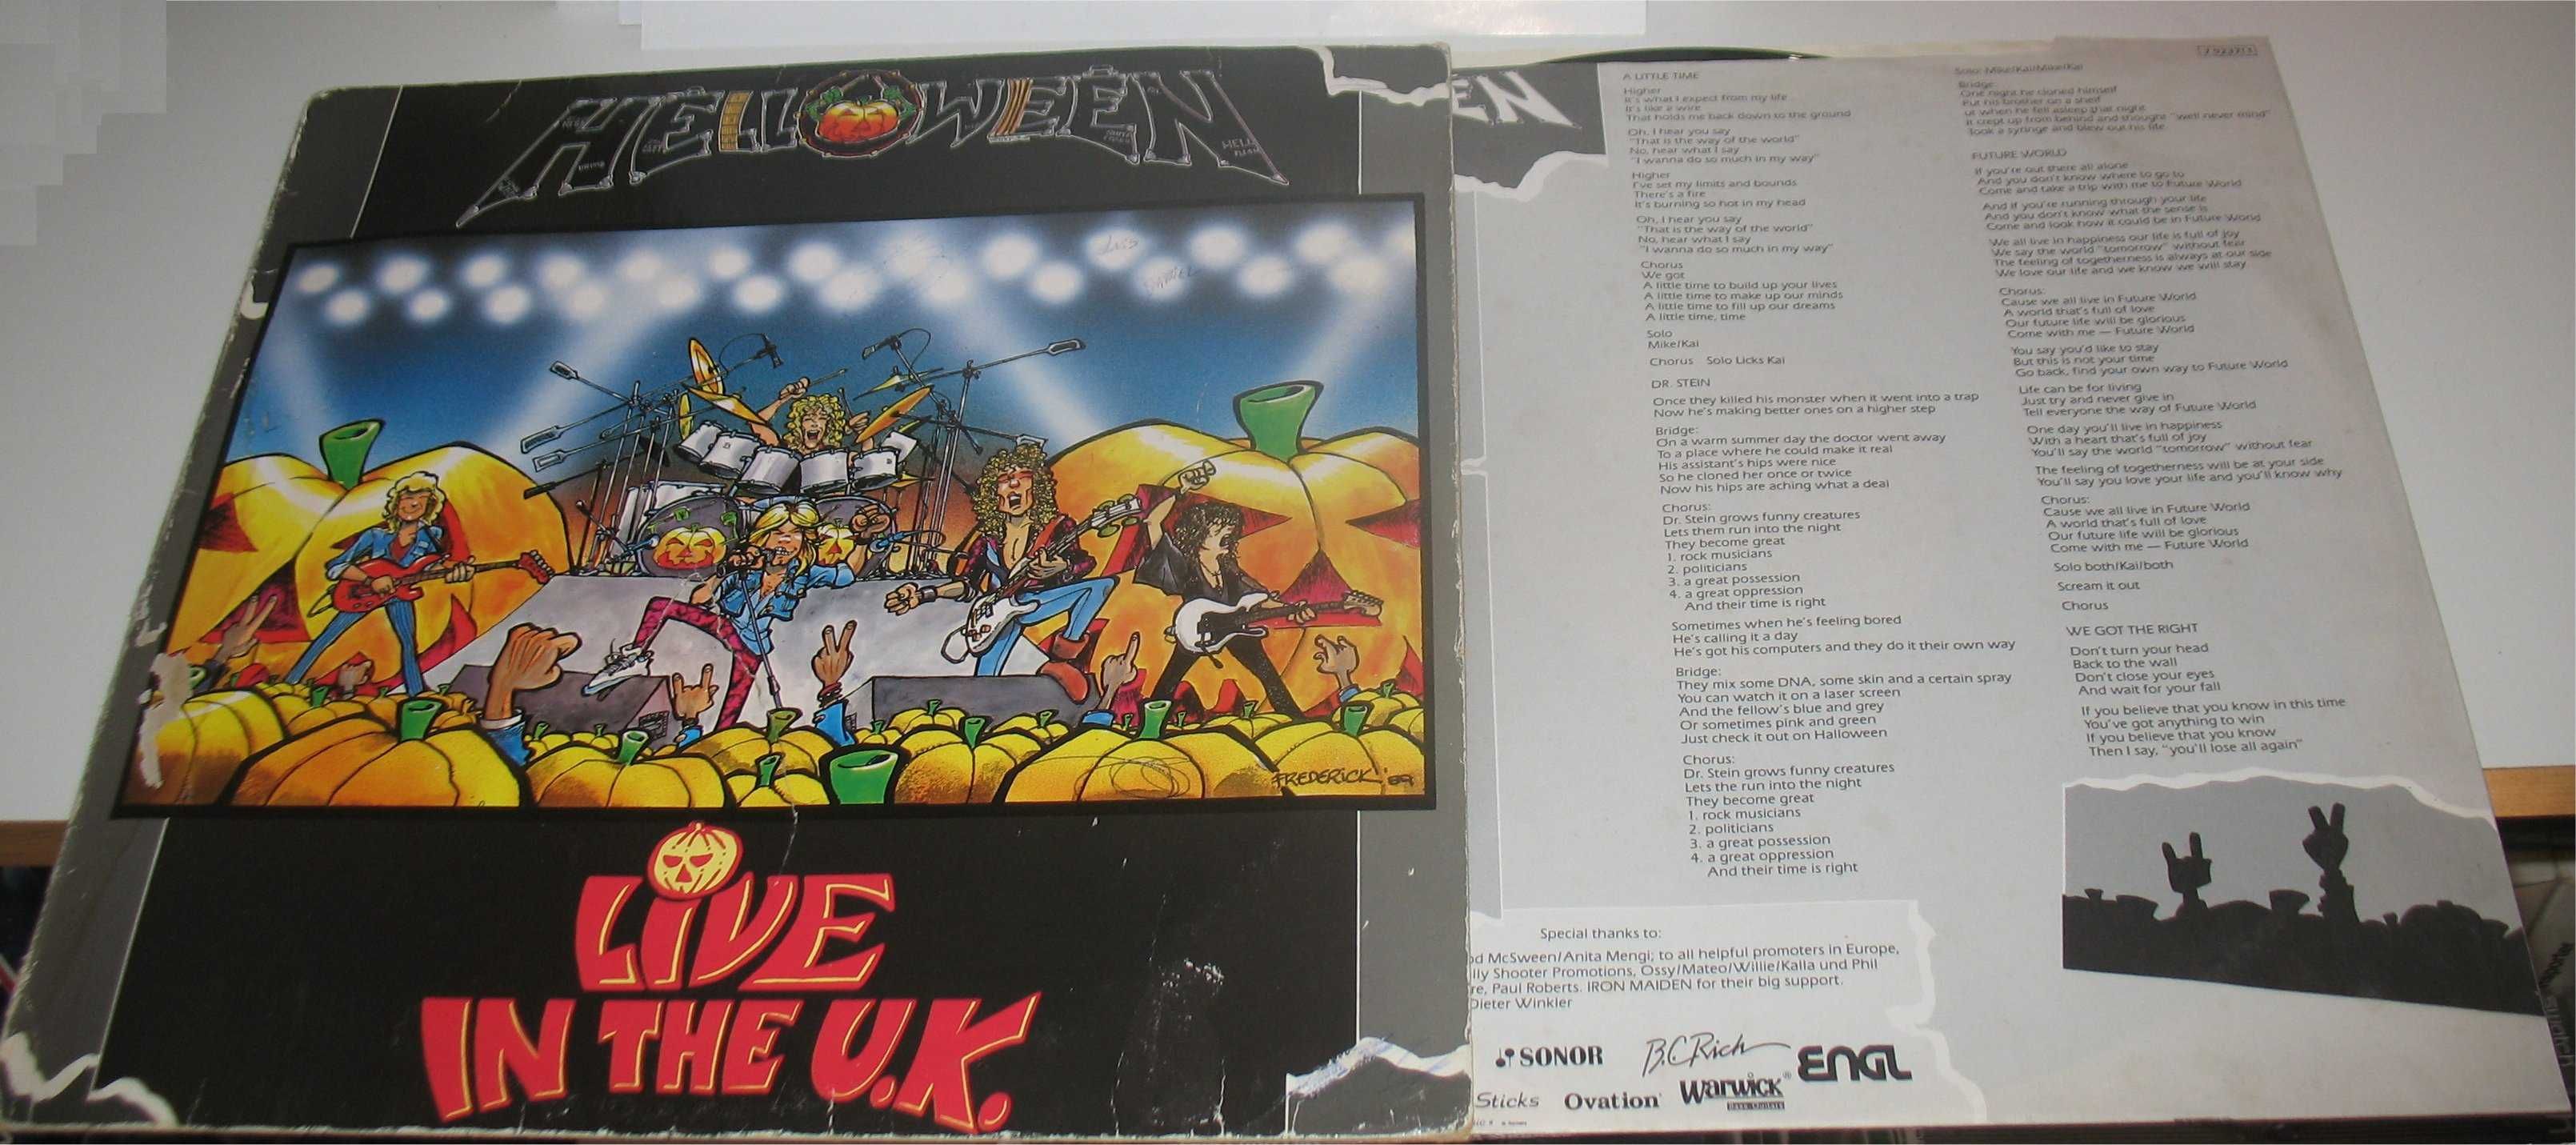 Helloween - Live In The U.K. LP